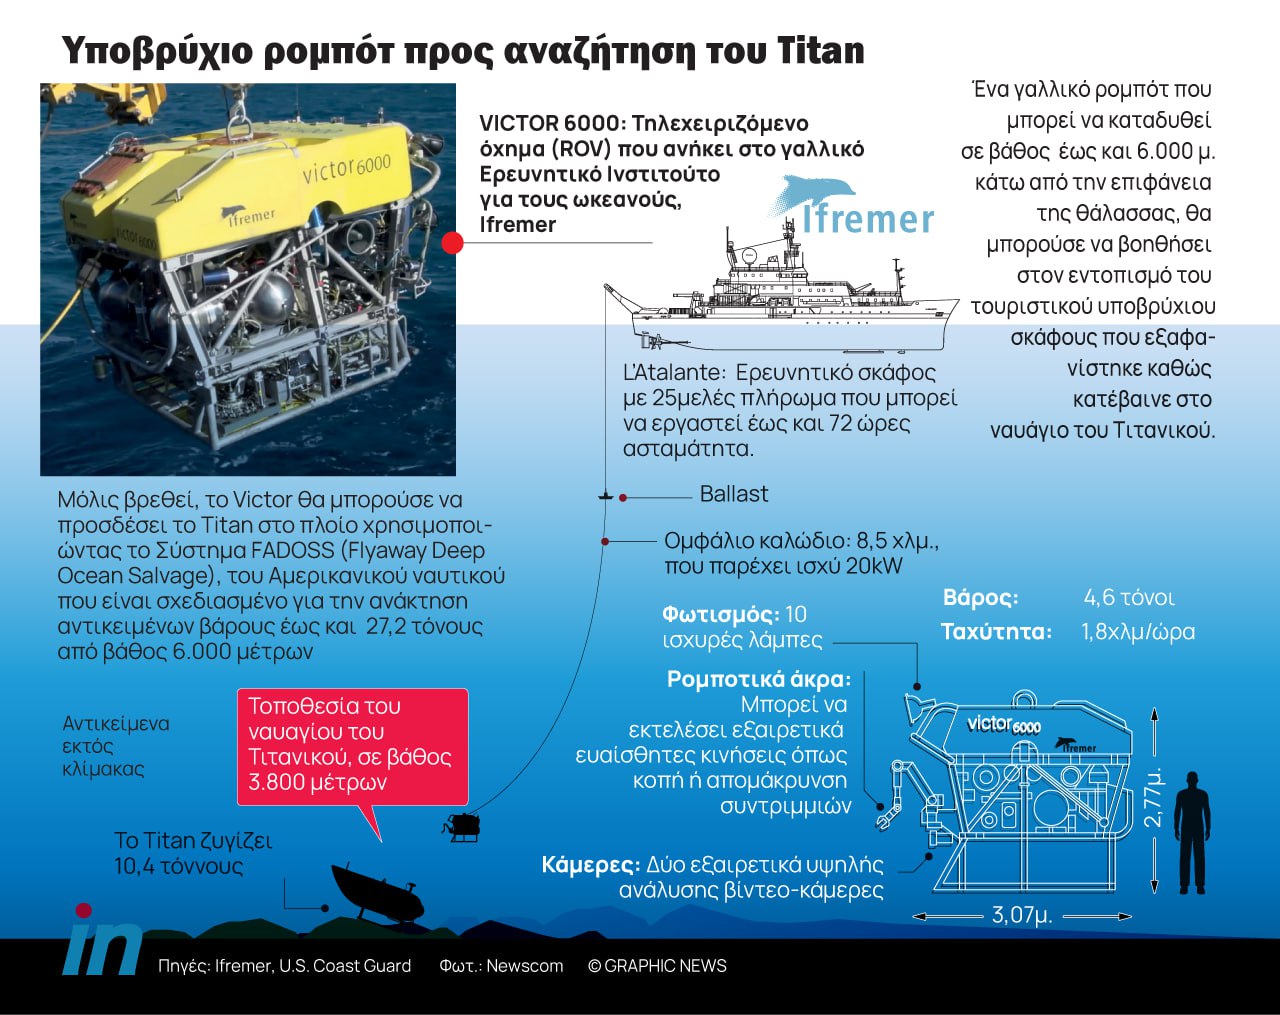 Υποβρύχιο Titan: Η επόμενη μέρα μετά την συντριβή